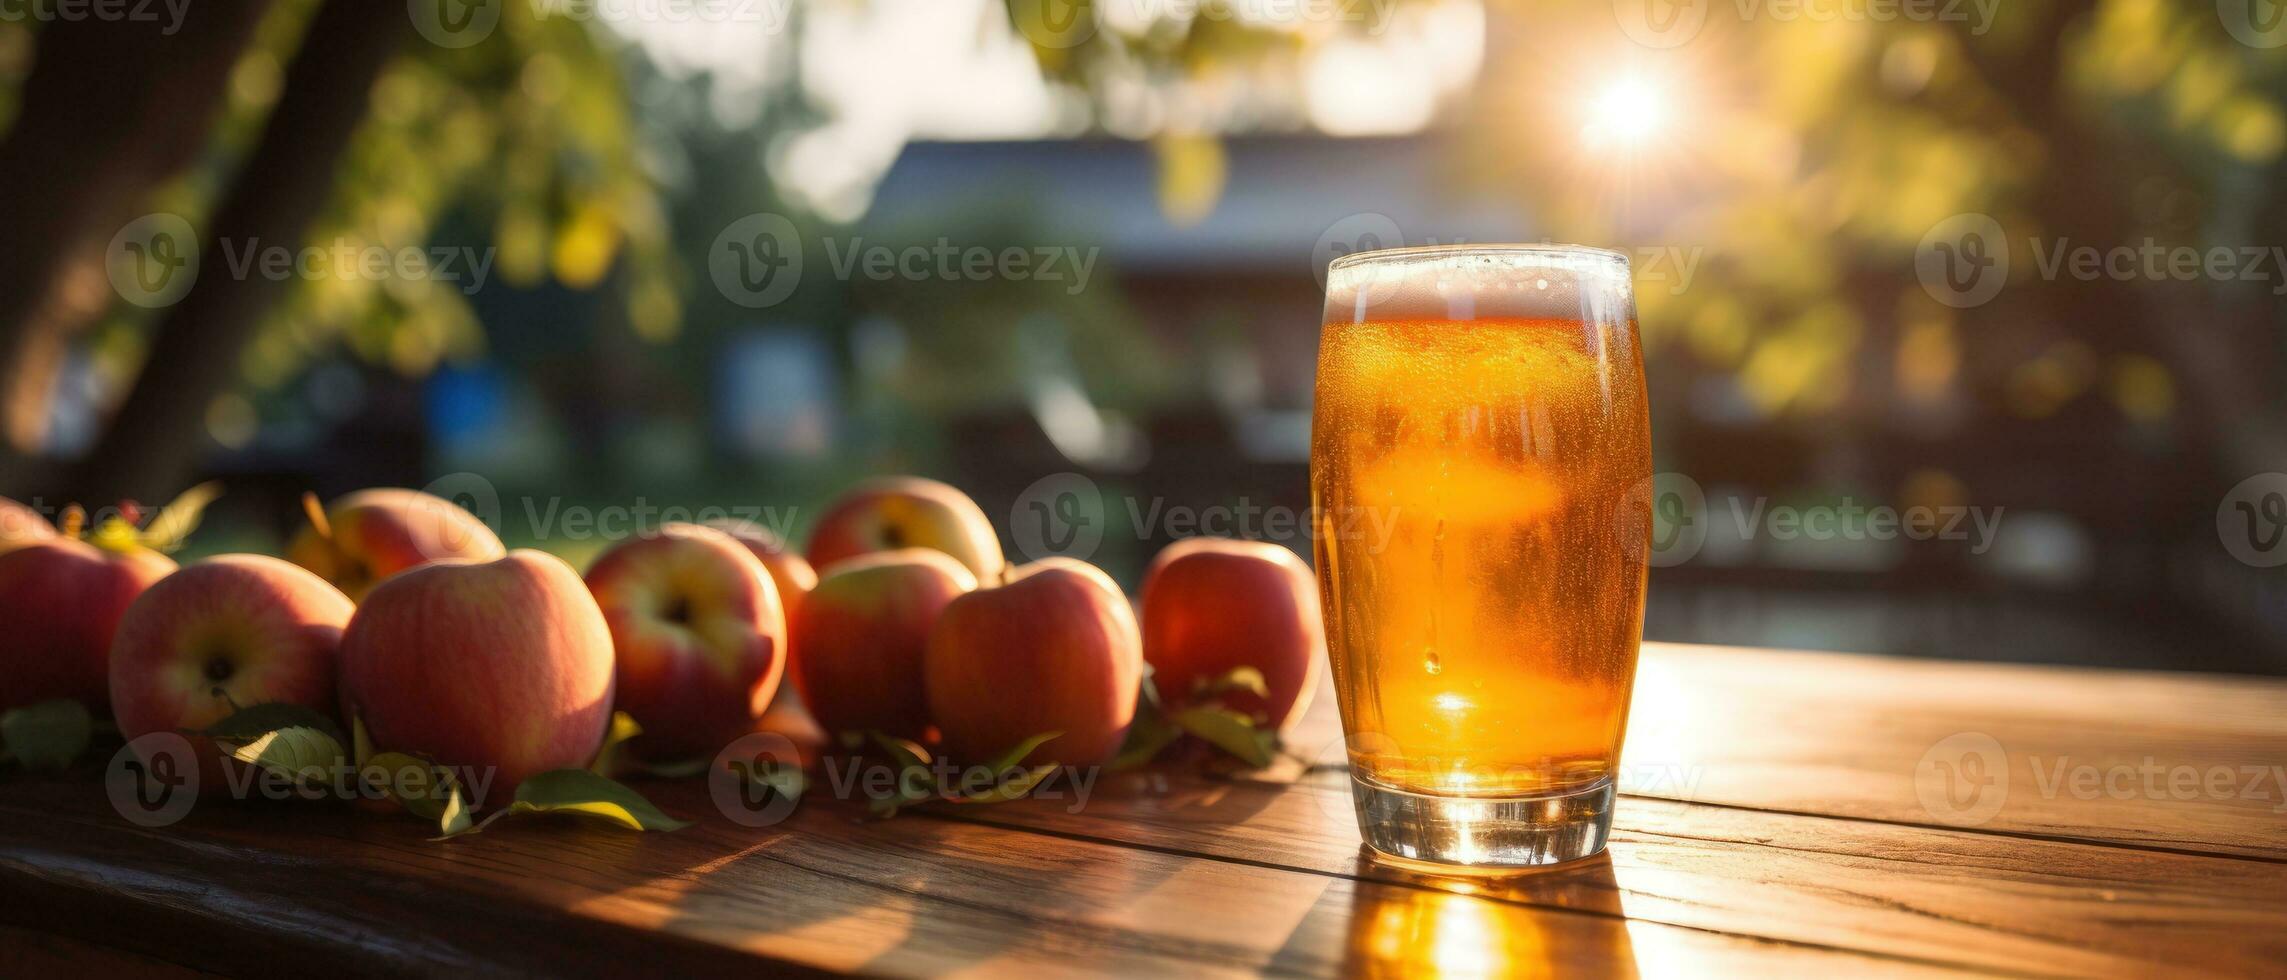 äpple cider på tabell med äpplen foto